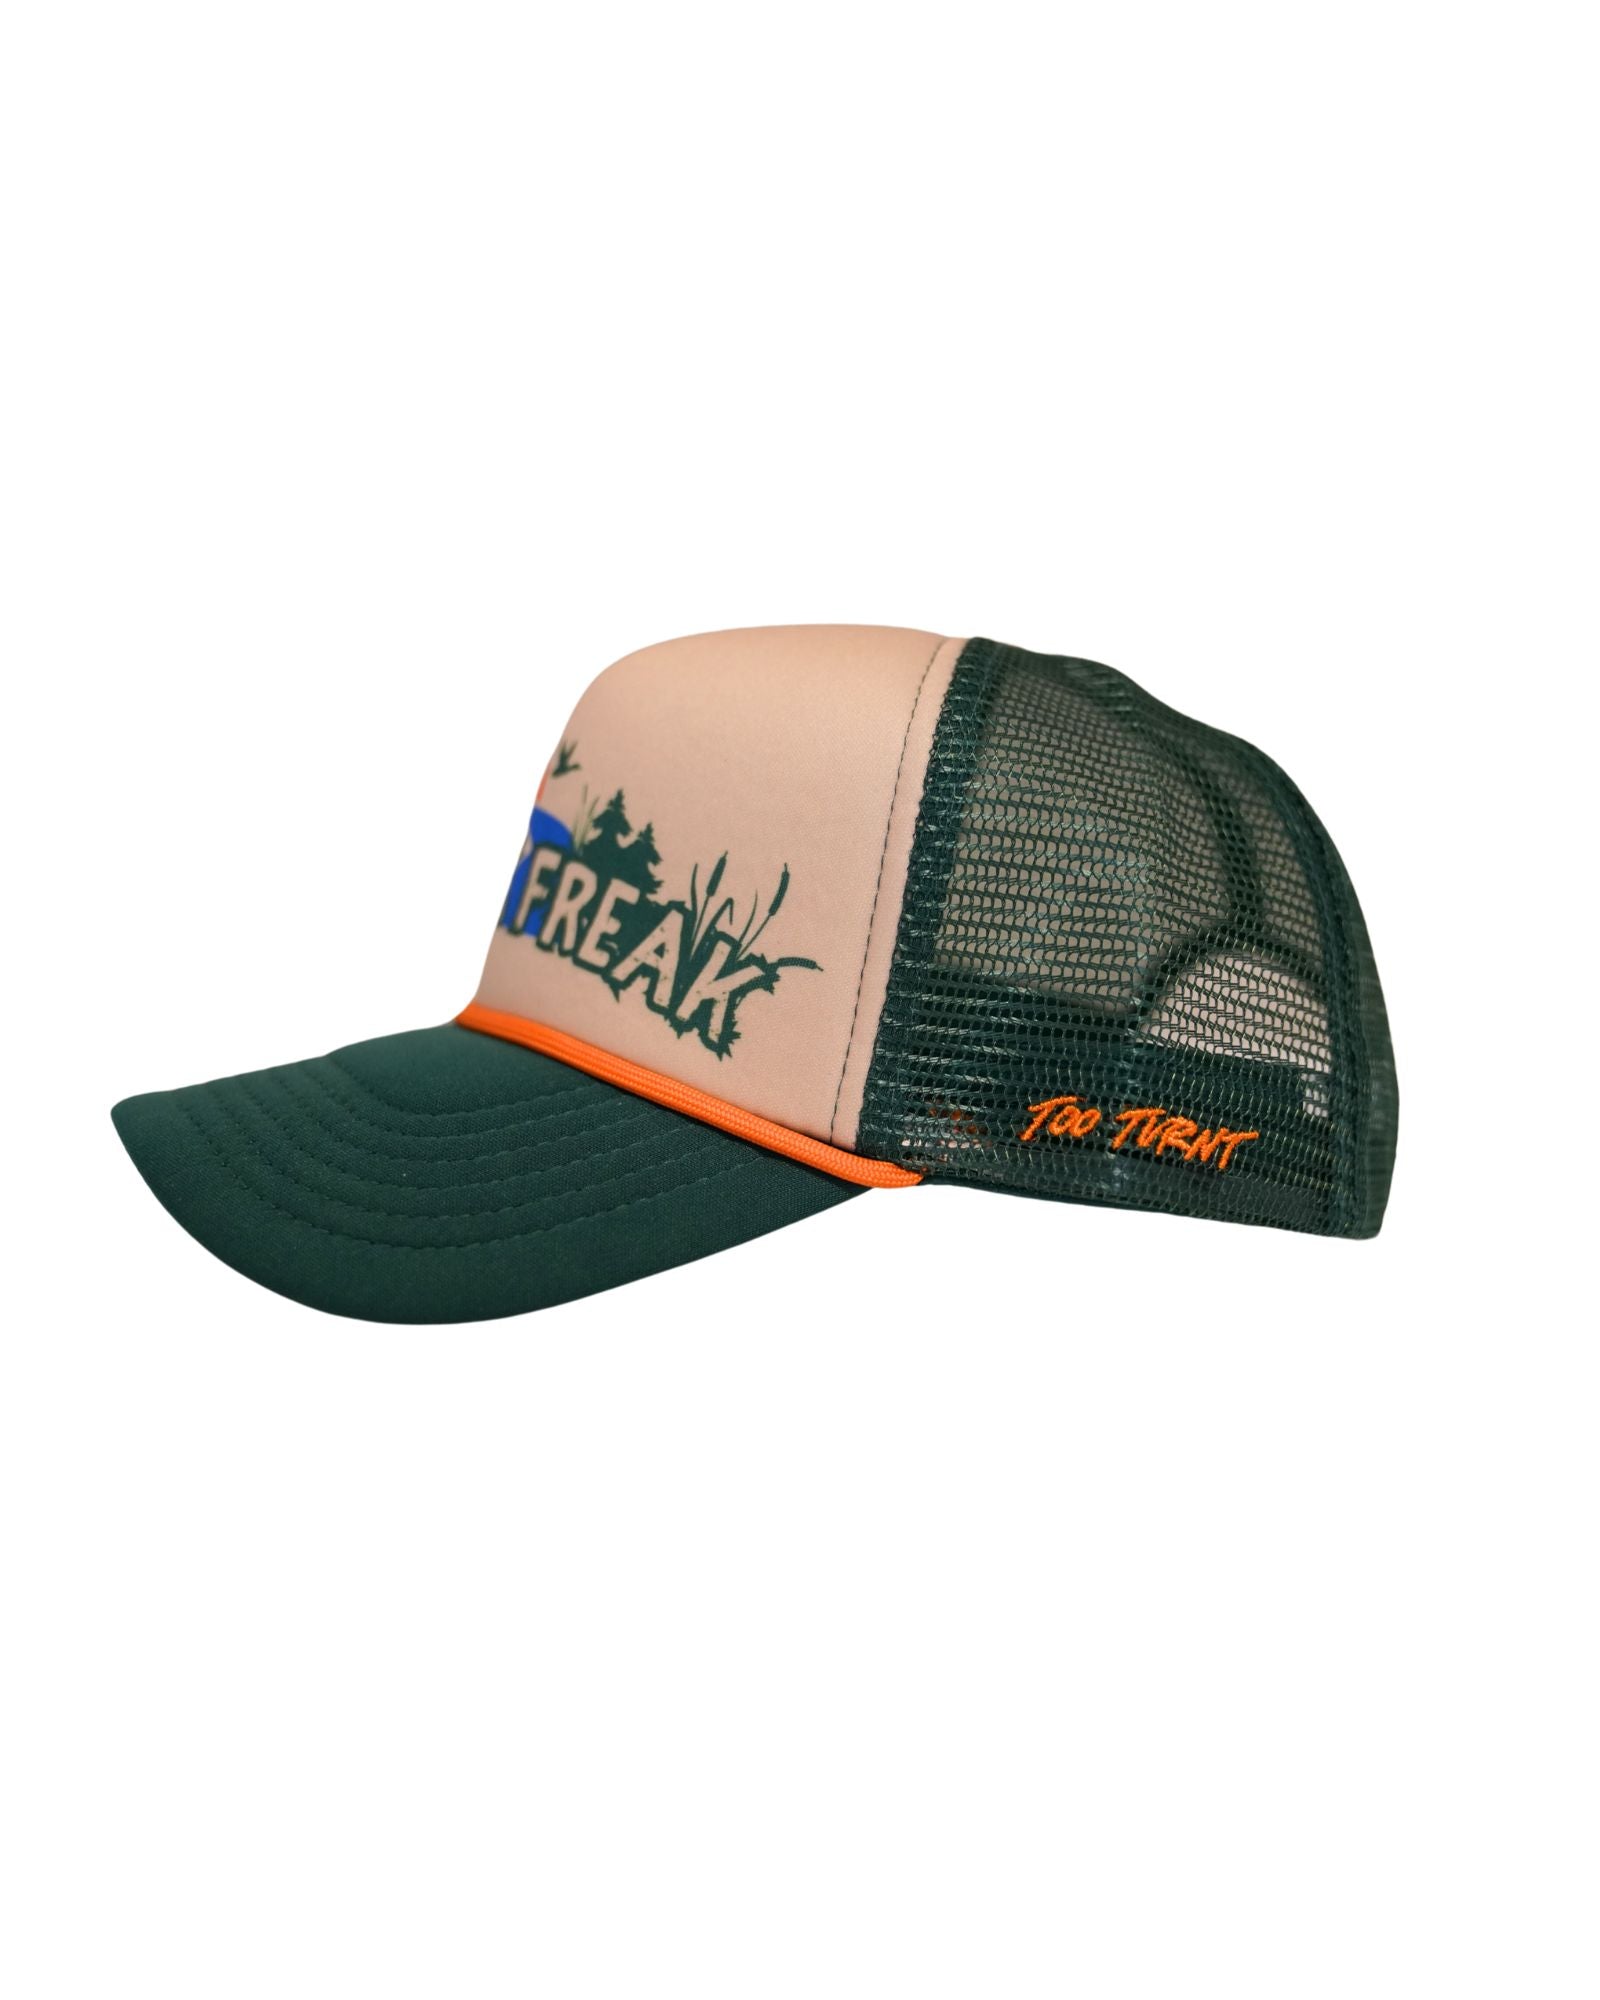 Creek Freak Trucker Hat